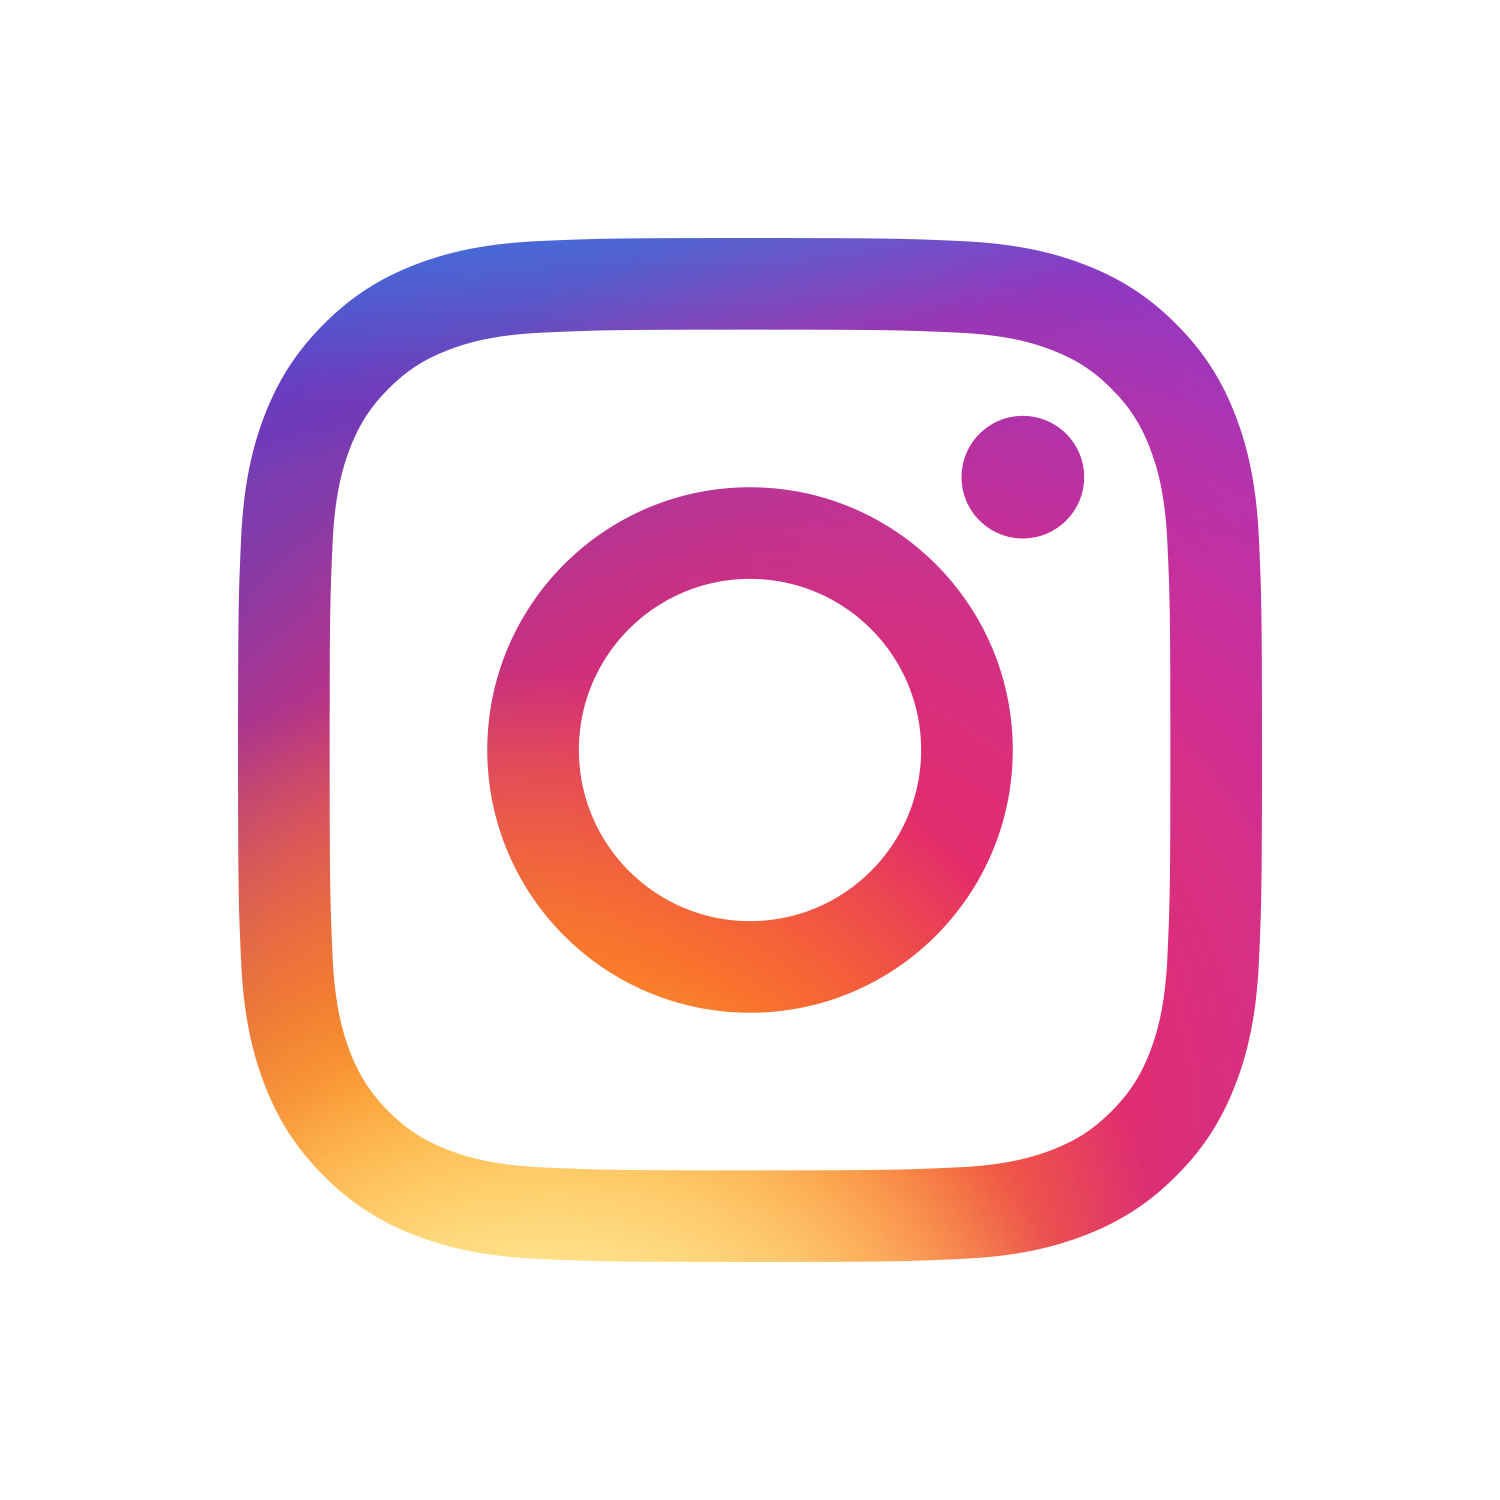 follow us on Instagram